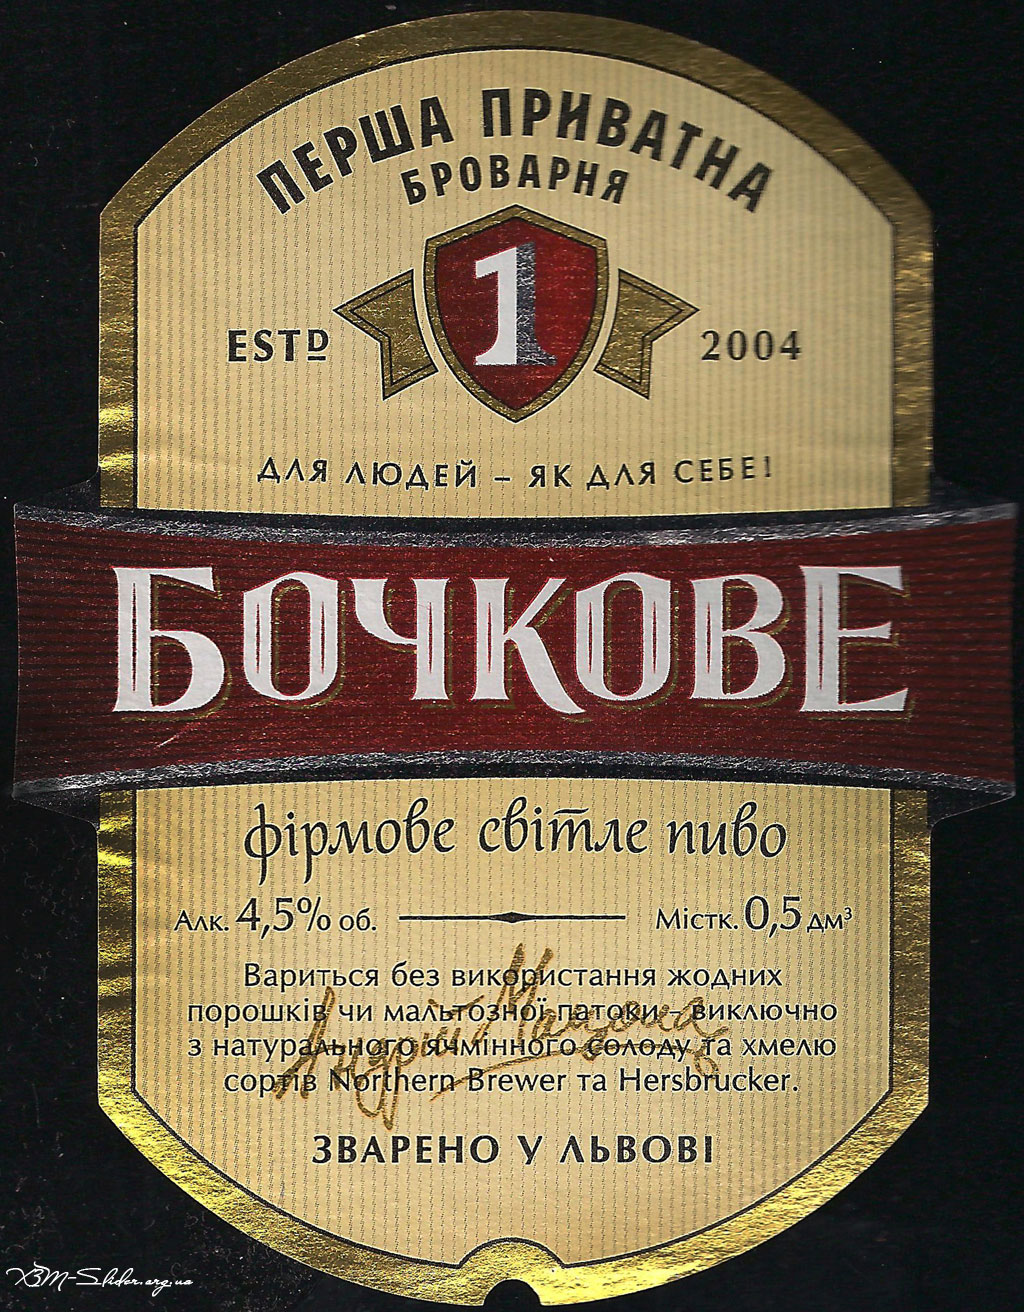 Перша Приватна Броварня - Бочкове - Фірмове світле пиво (2011)